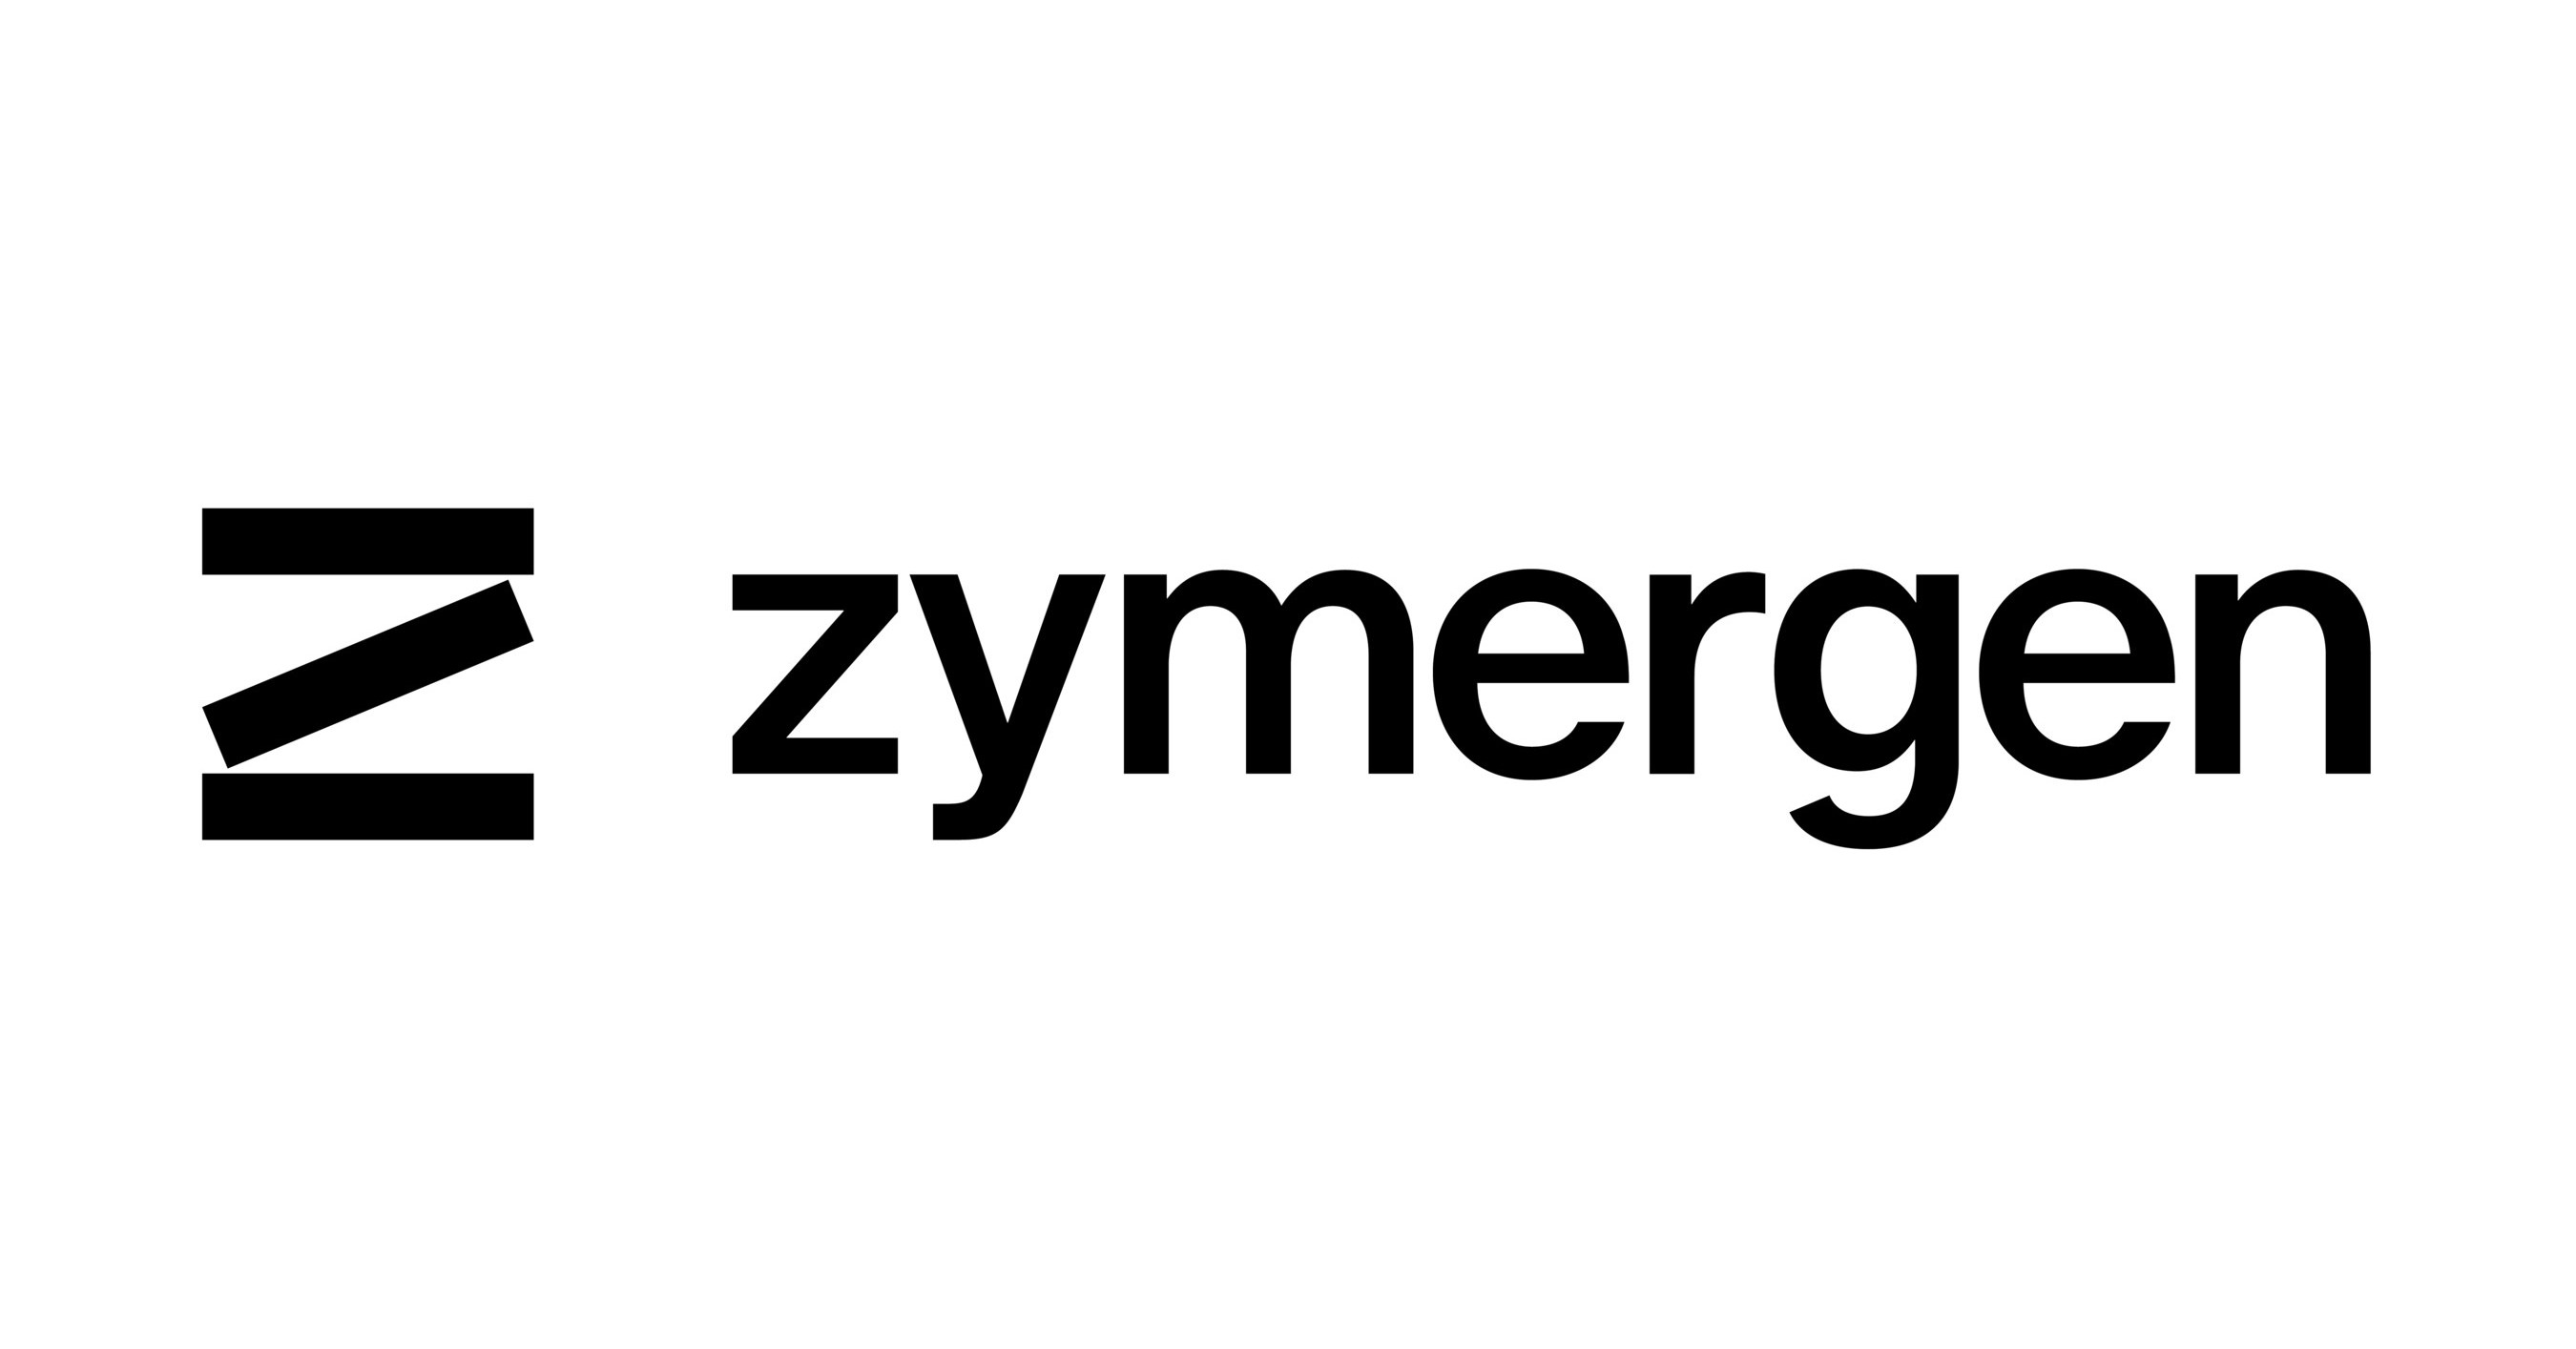 Industry Pioneer Jay Flatley Named as Chairman of Zymergen Board of Directors